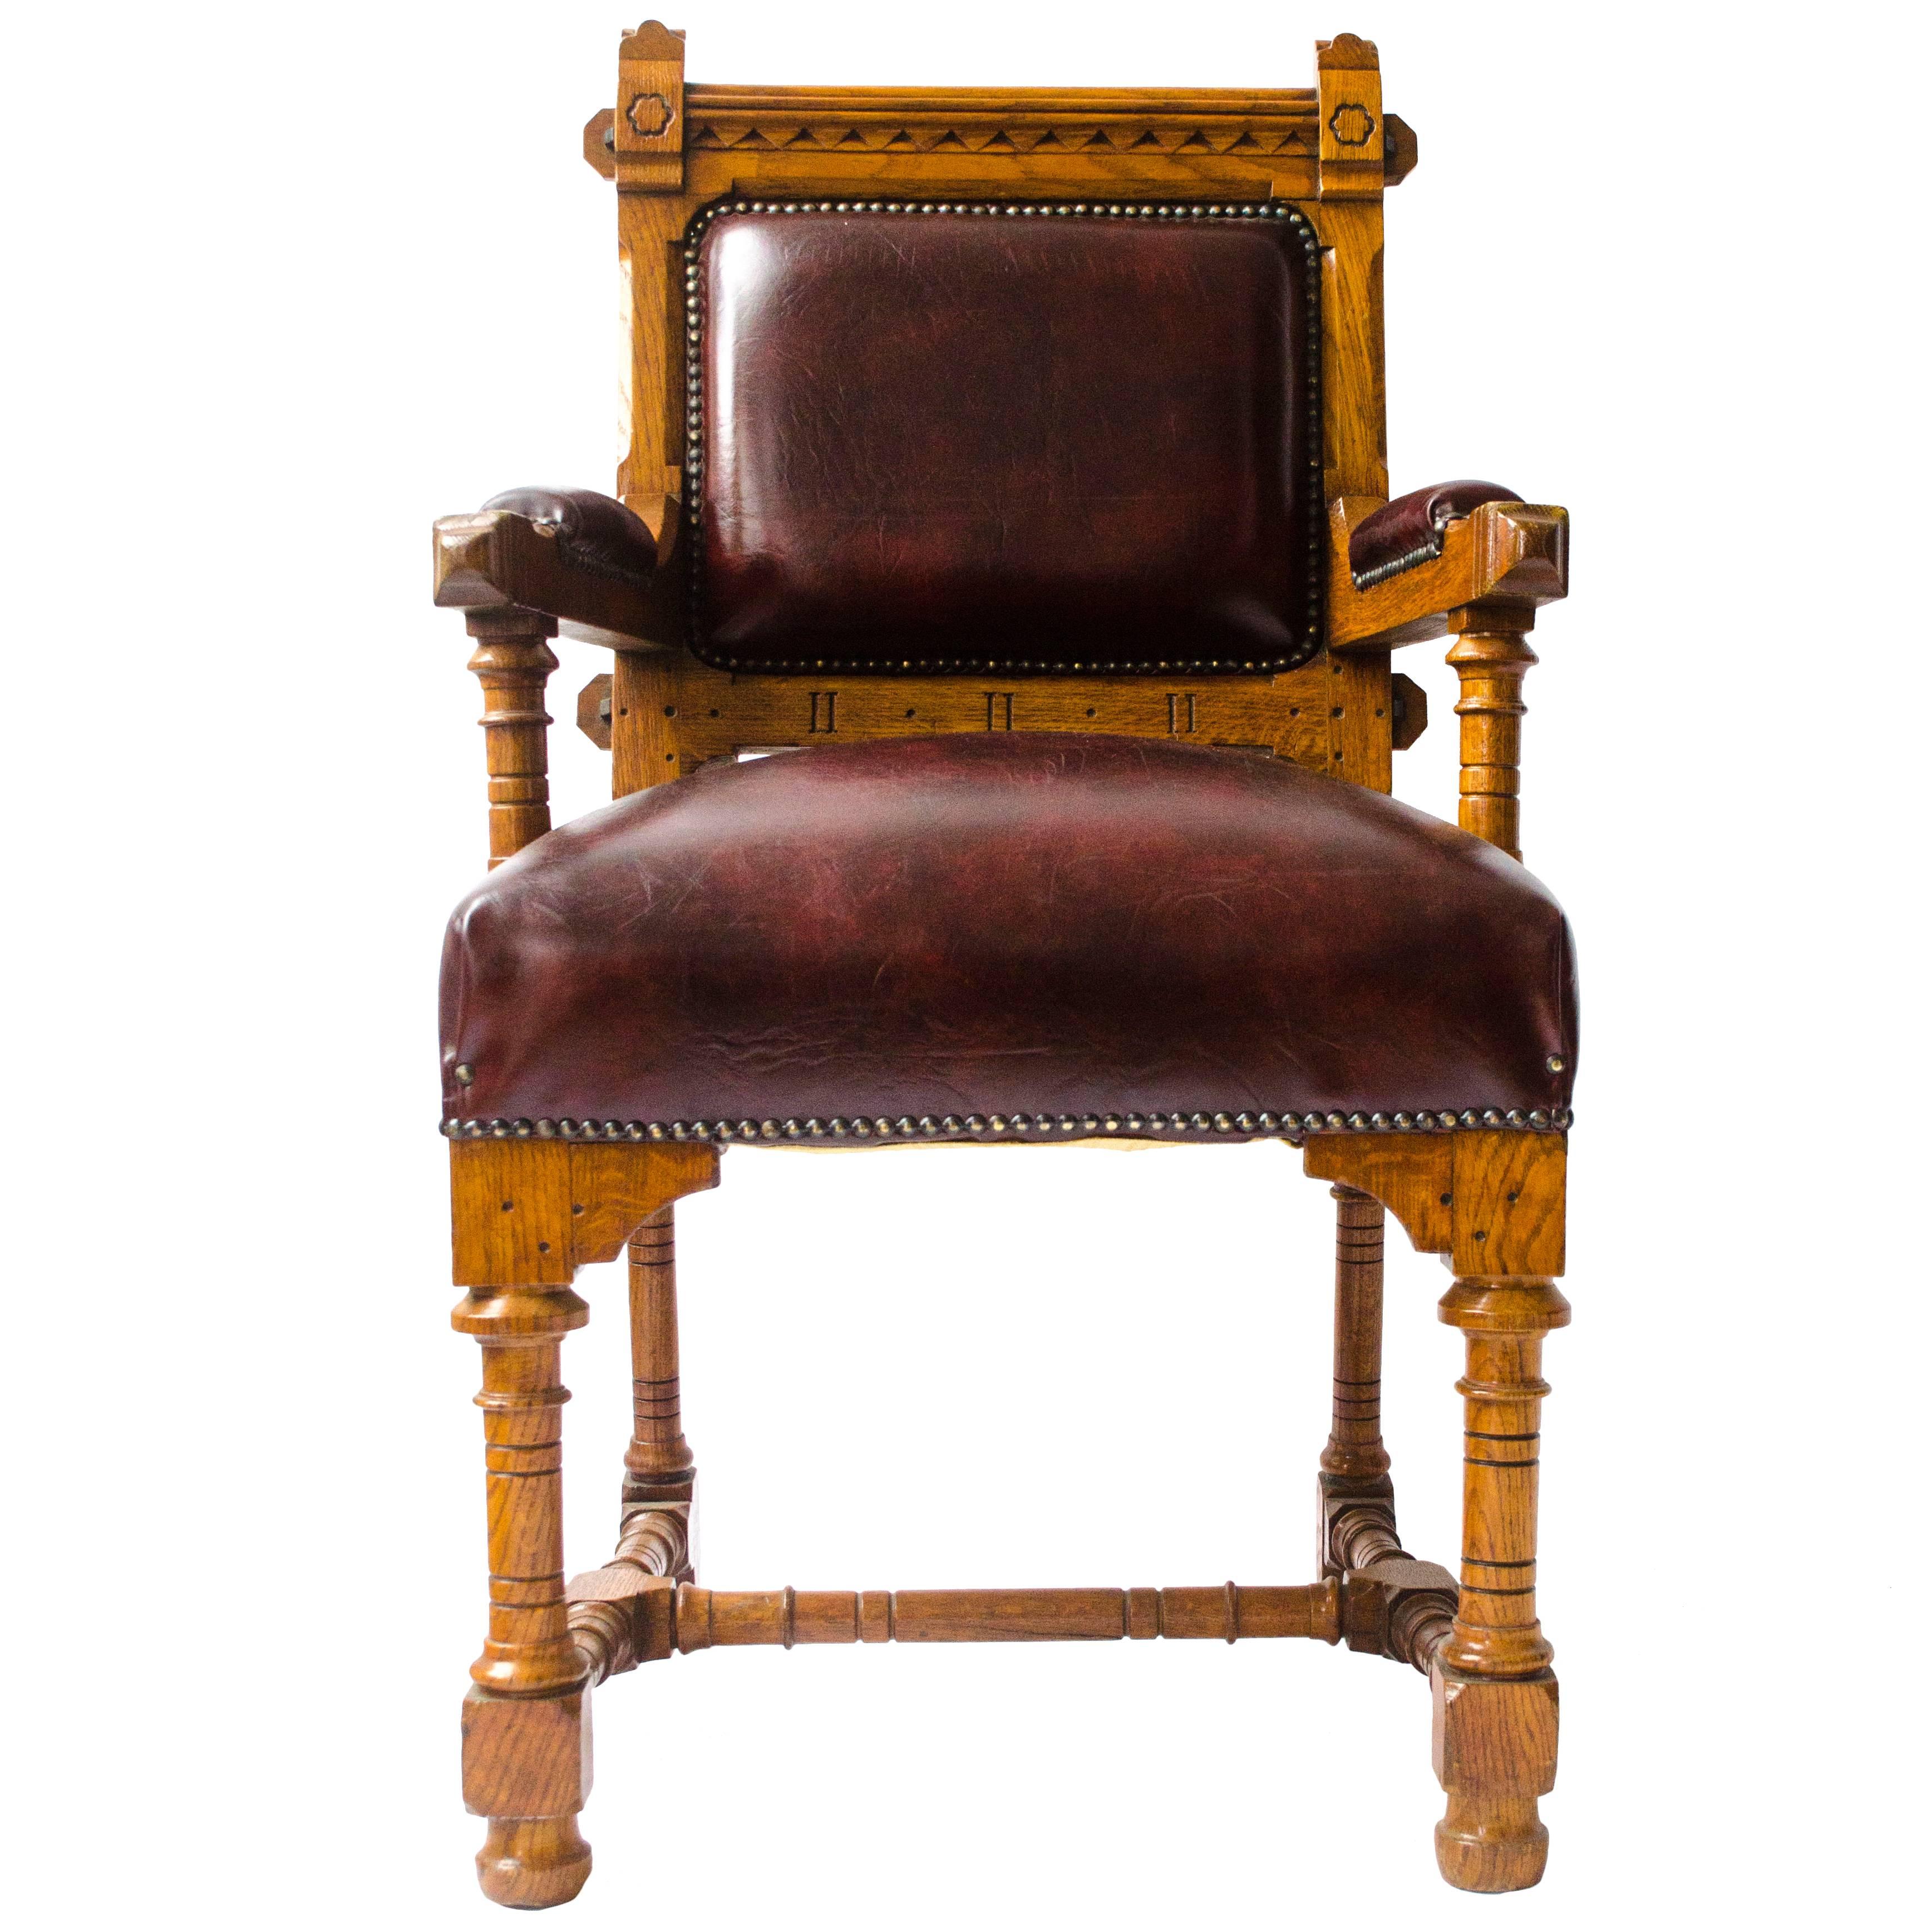 Neogotik-Revival-Sessel aus Eiche, entworfen von John Pollard Seddon für Seddon and Co.